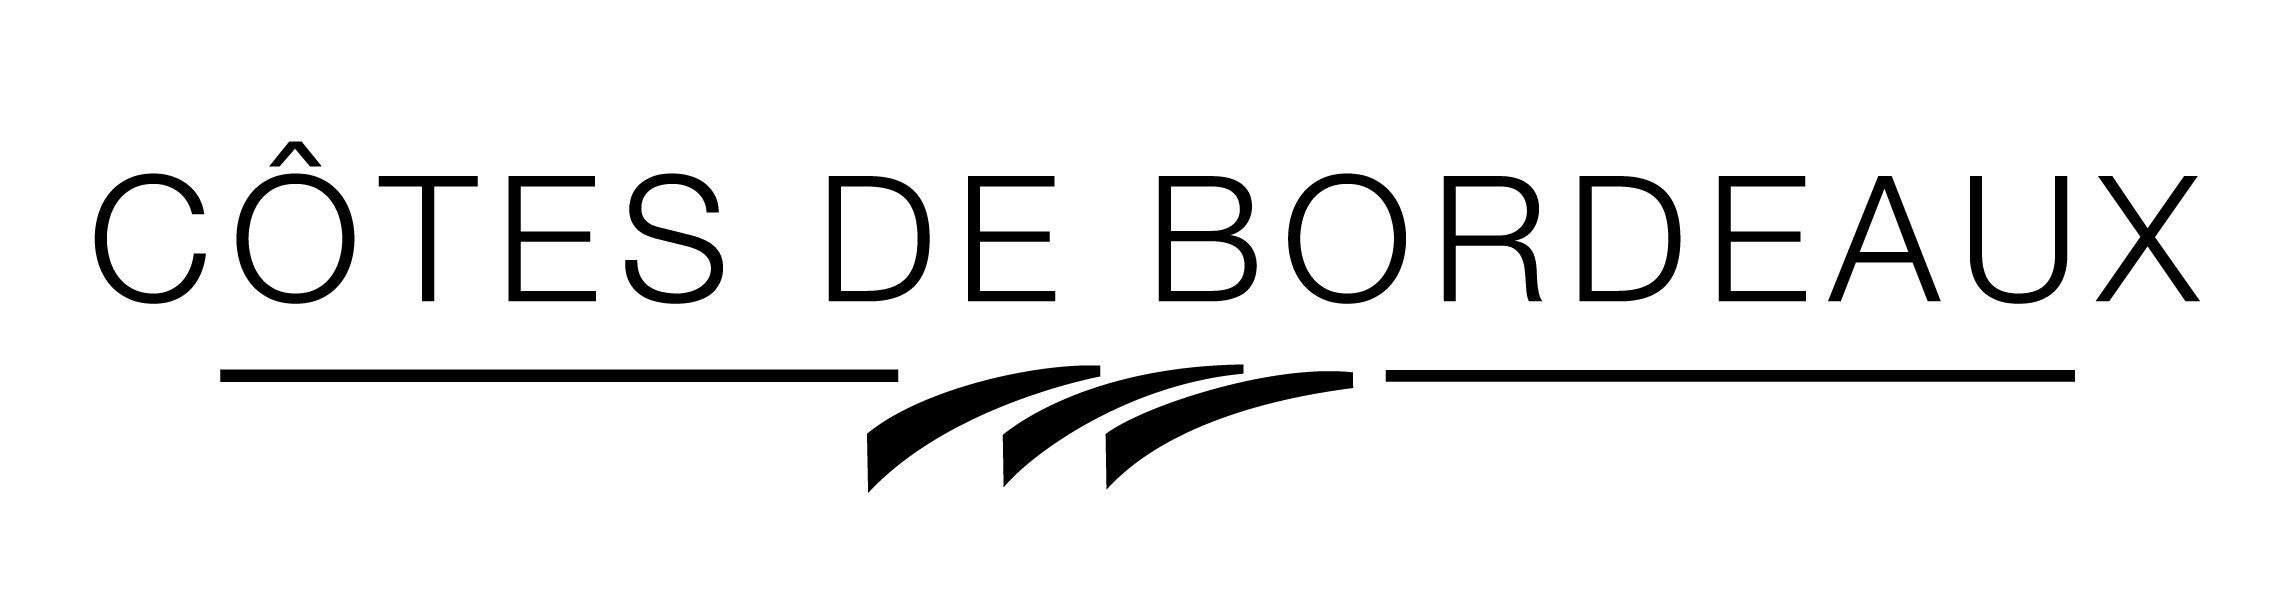 Bordeau Logo - Professional